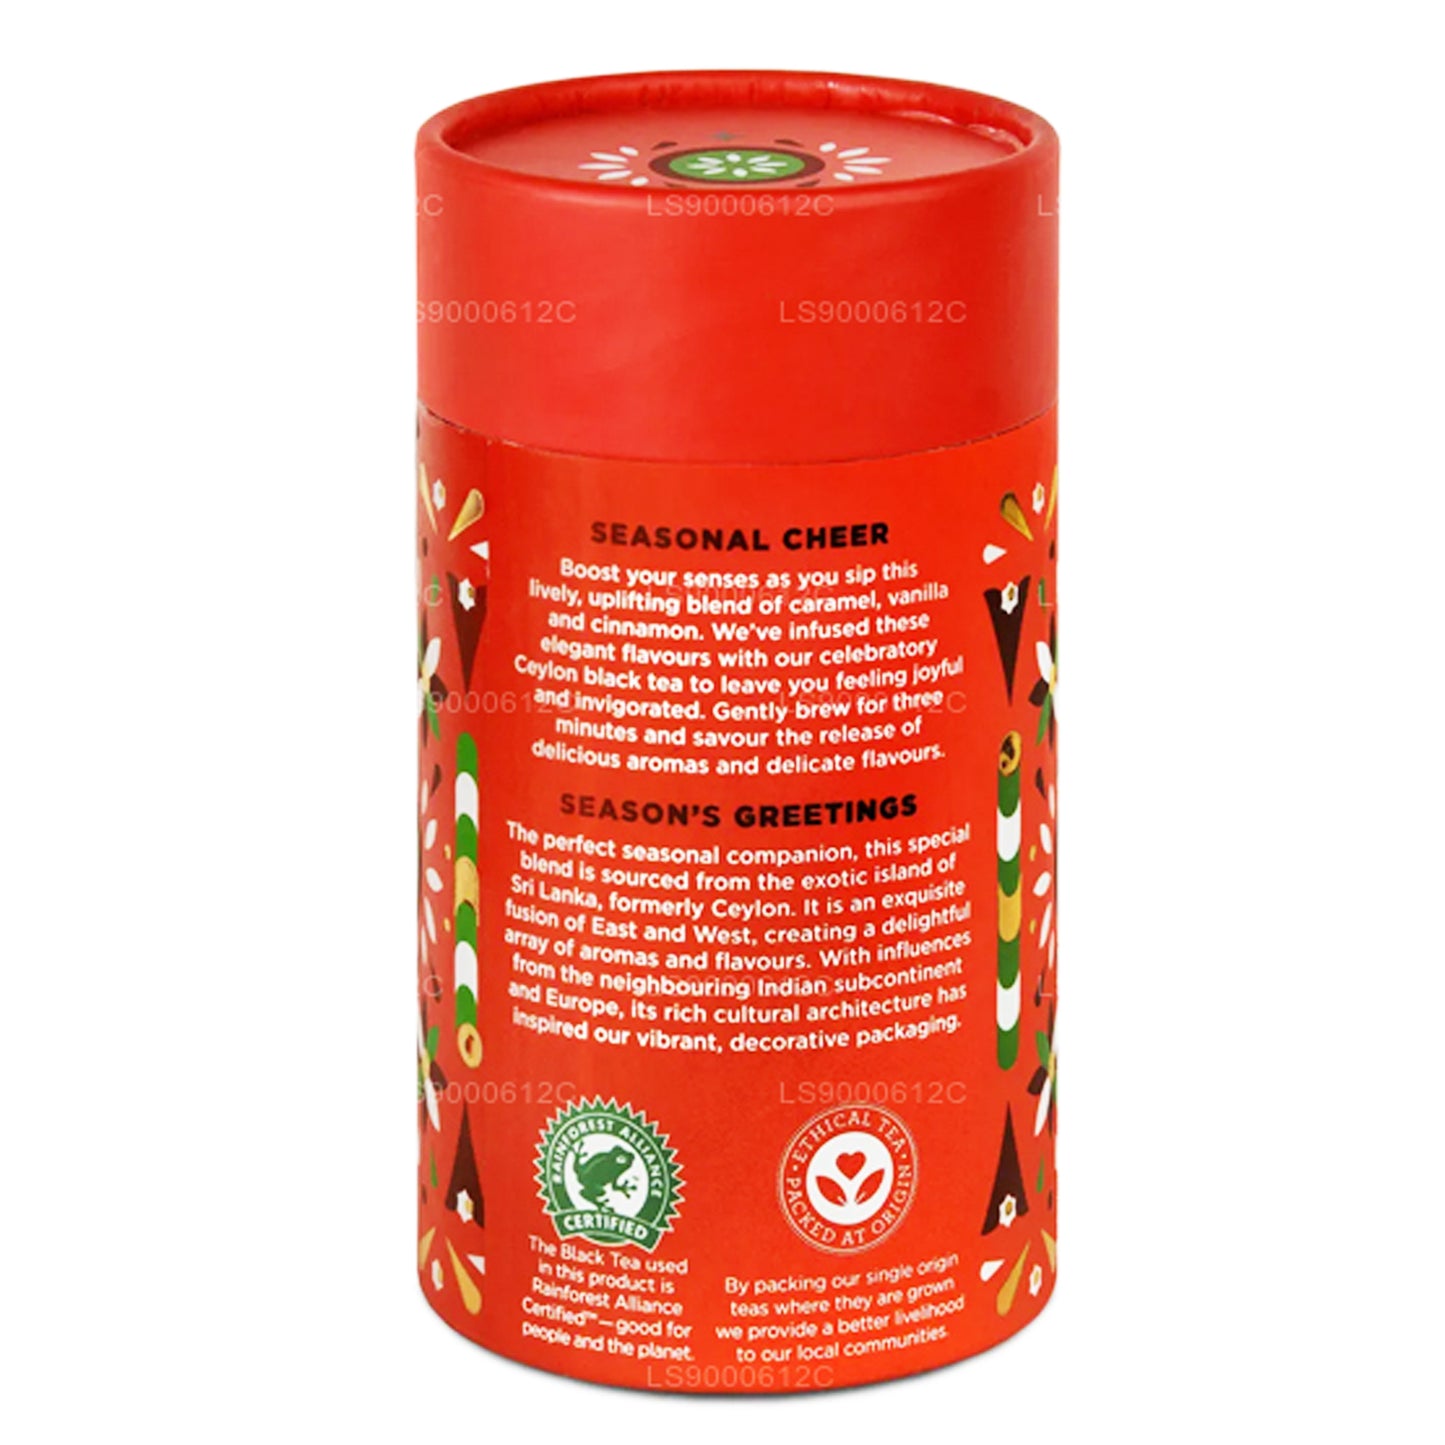 Jaf Tea Seasonal Cheer - Sort te aromatiseret med karamel, vanilje og kanel (50 g)